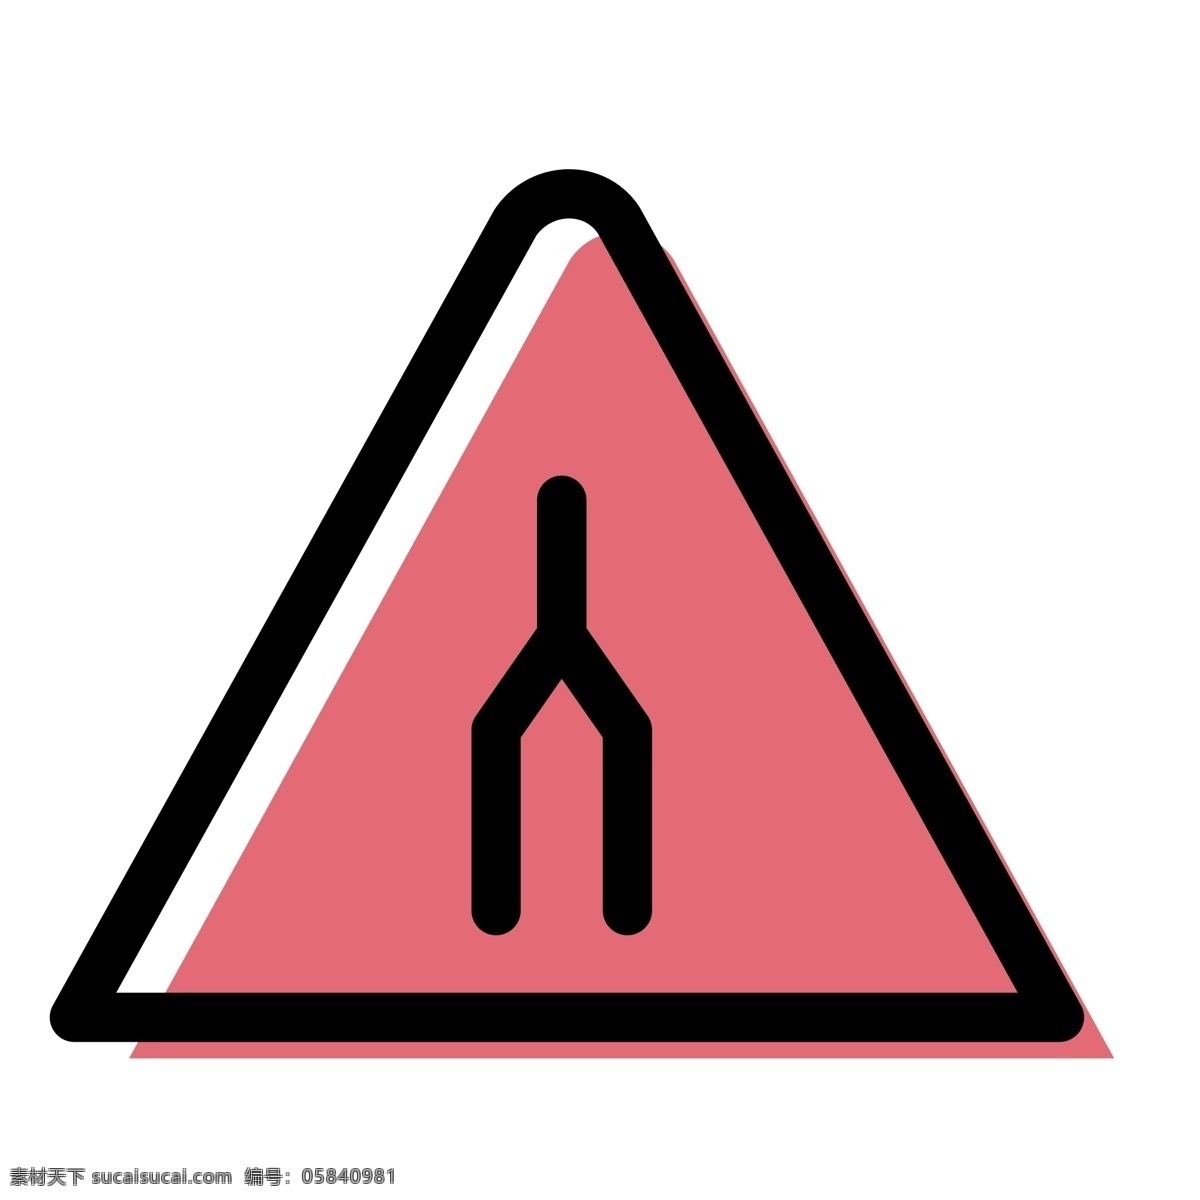 道路汇流 汇流 三角标 提示牌 扁平化ui ui图标 手机图标 界面ui 网页ui h5图标